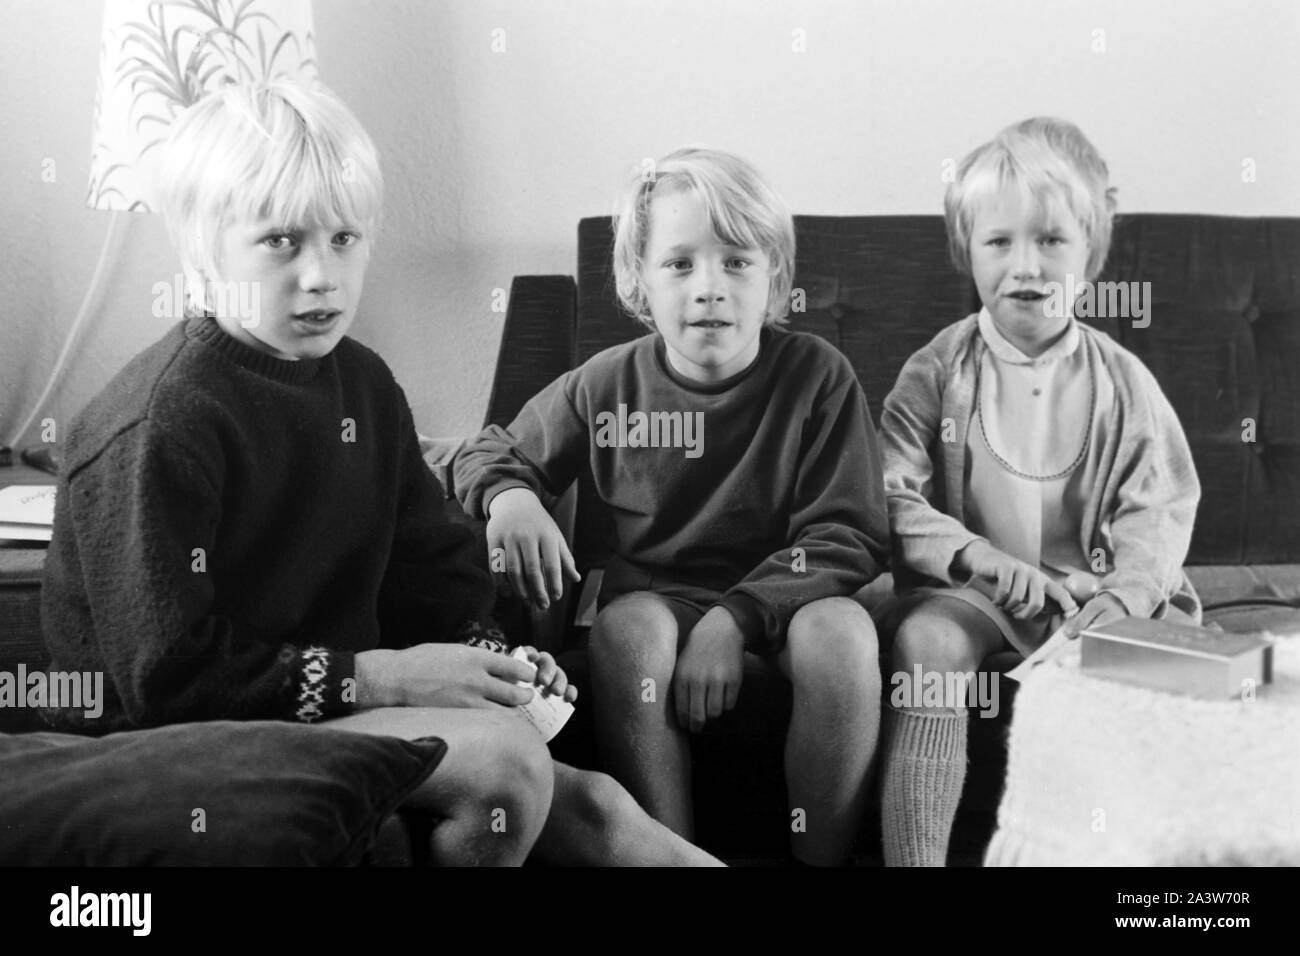 Kinder beschäftigen sich im Wohnzimmer, Deutschland frühe 1970er Jahre. I bambini presso il salotto, la Germania nei primi anni settanta. Foto Stock